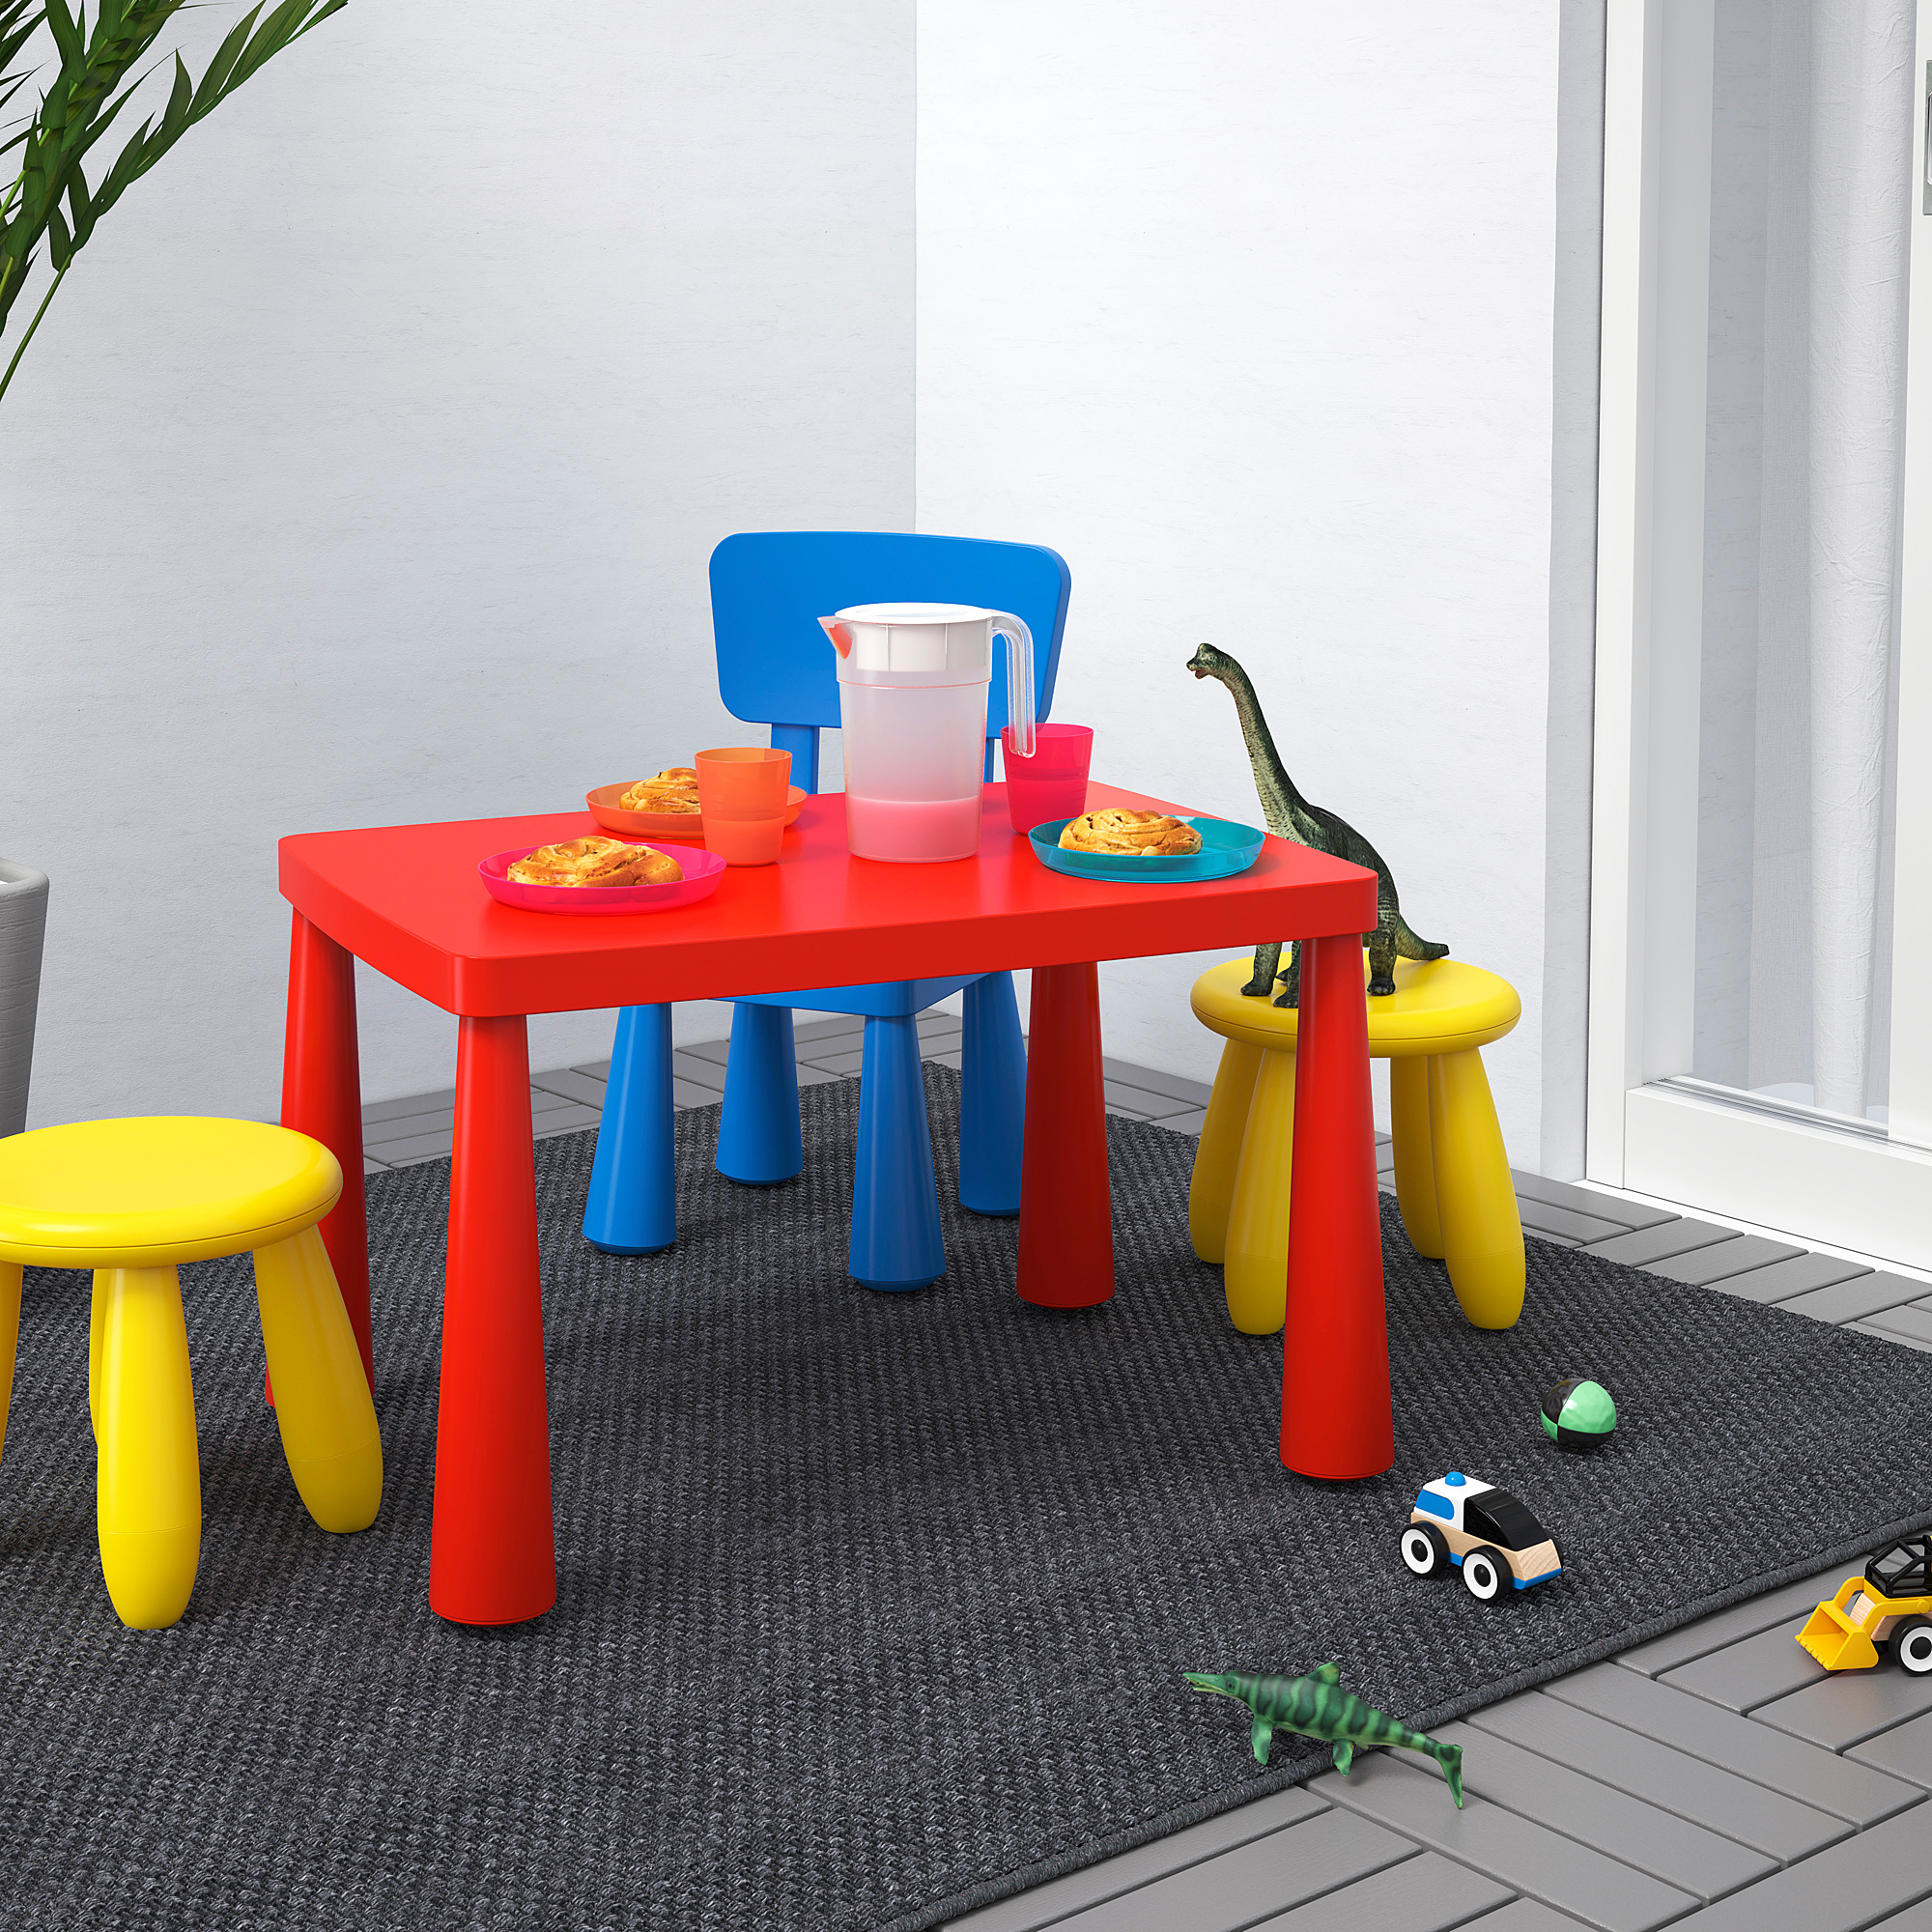 MAMMUT children's table